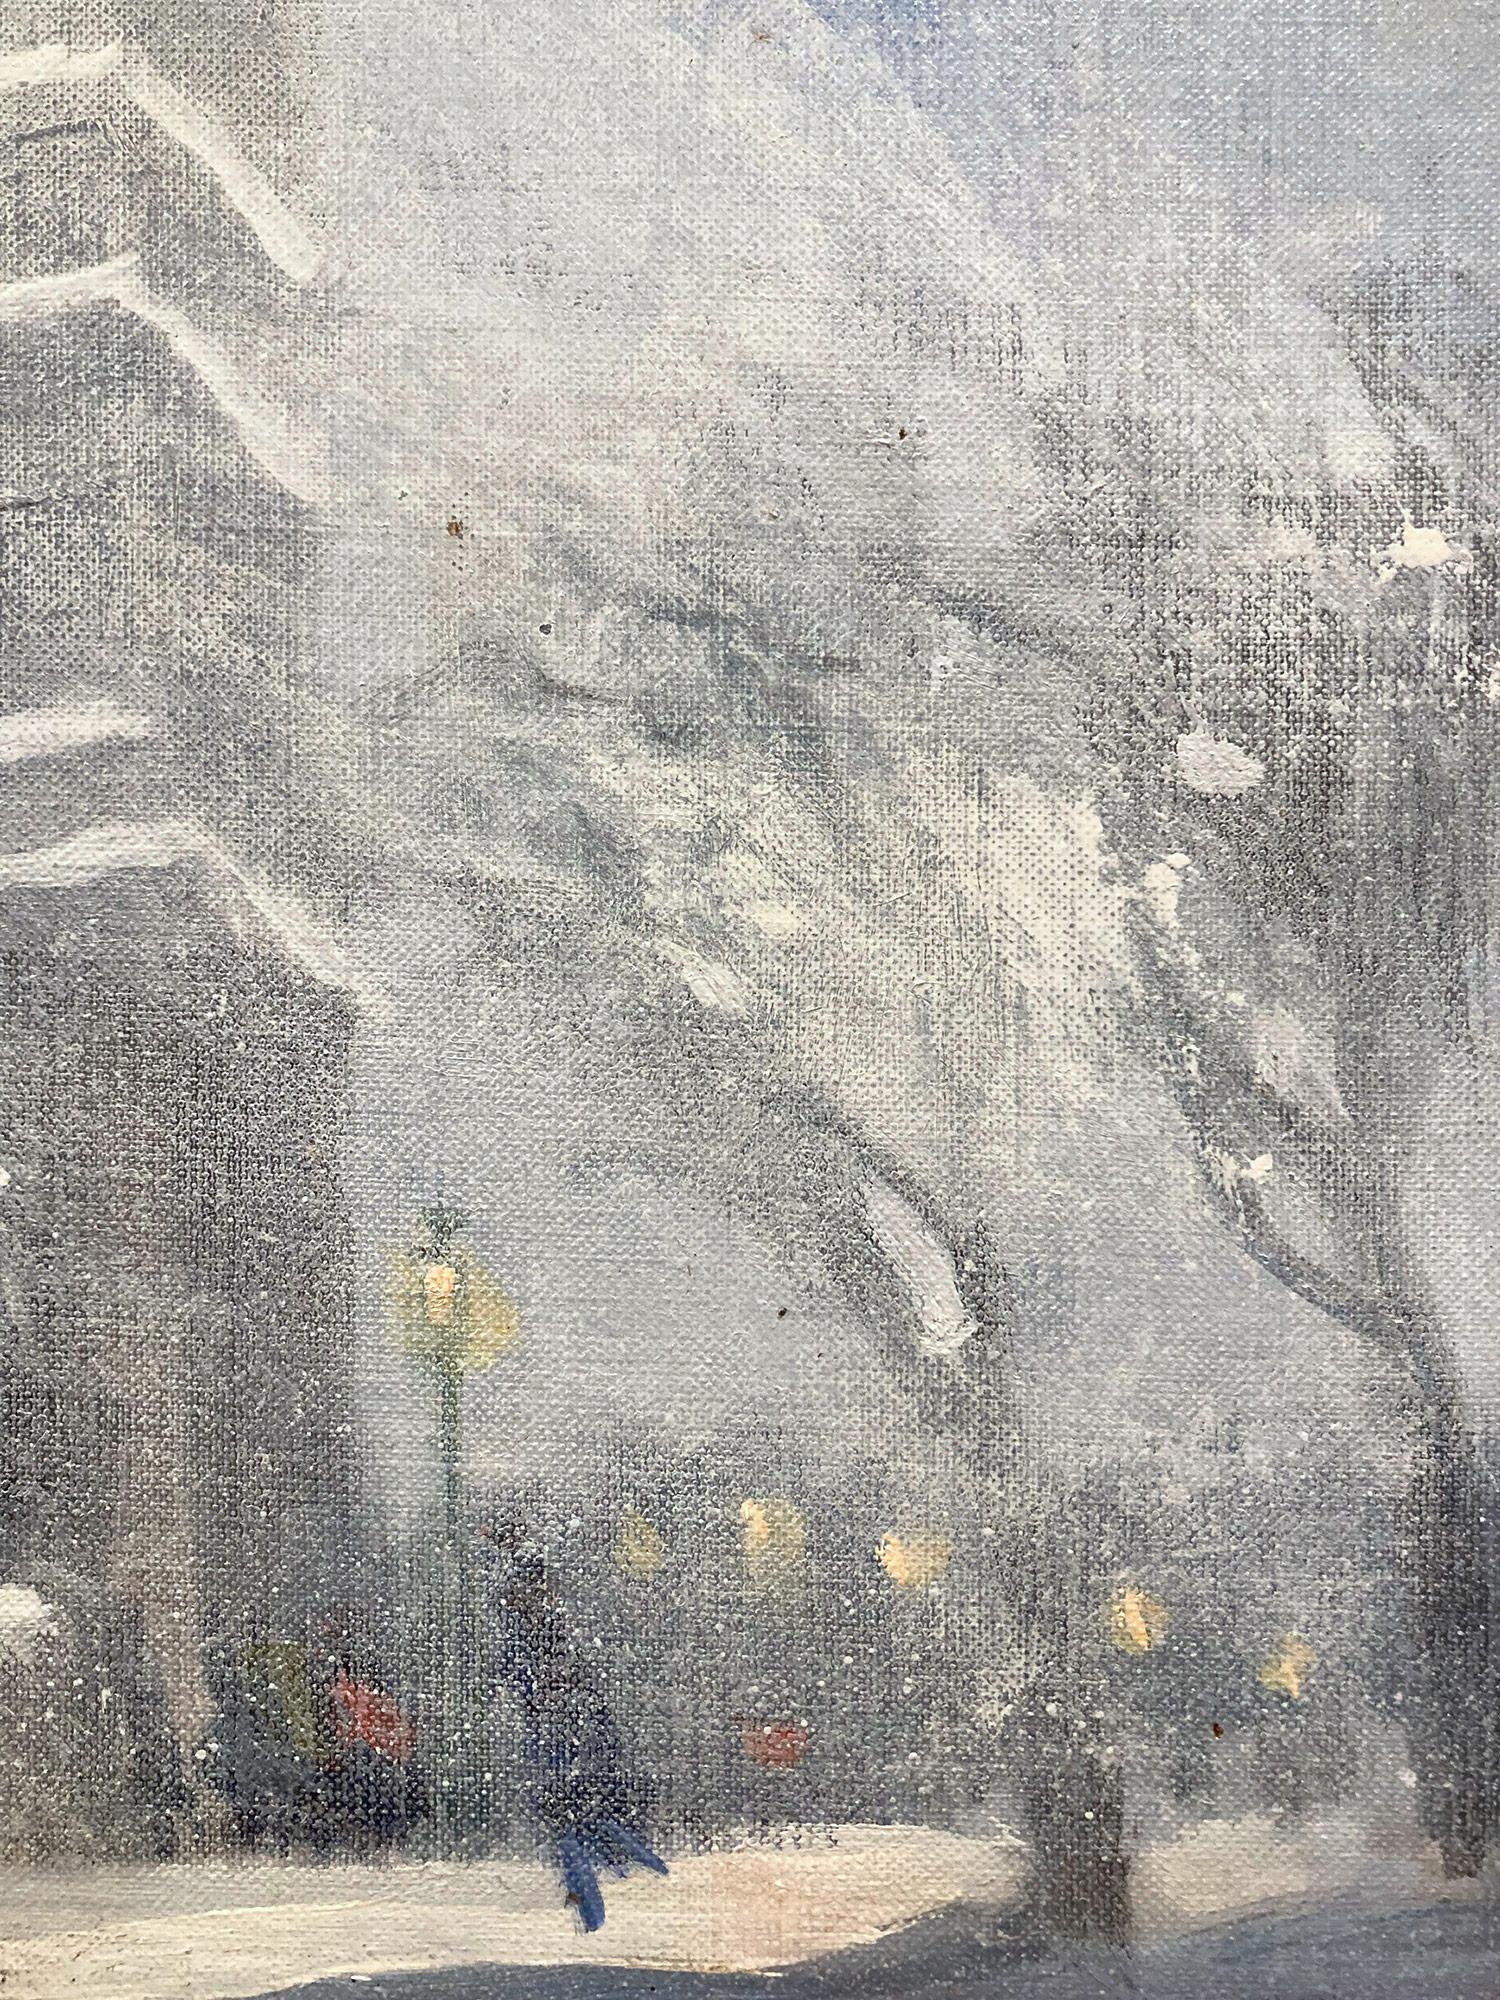 Une charmante représentation de la neige à New York, près du parc Washington Square, par une froide soirée enneigée, avec les lumières de la ville et les bâtiments au loin. Une scène impressionniste confortable avec une merveilleuse utilisation de